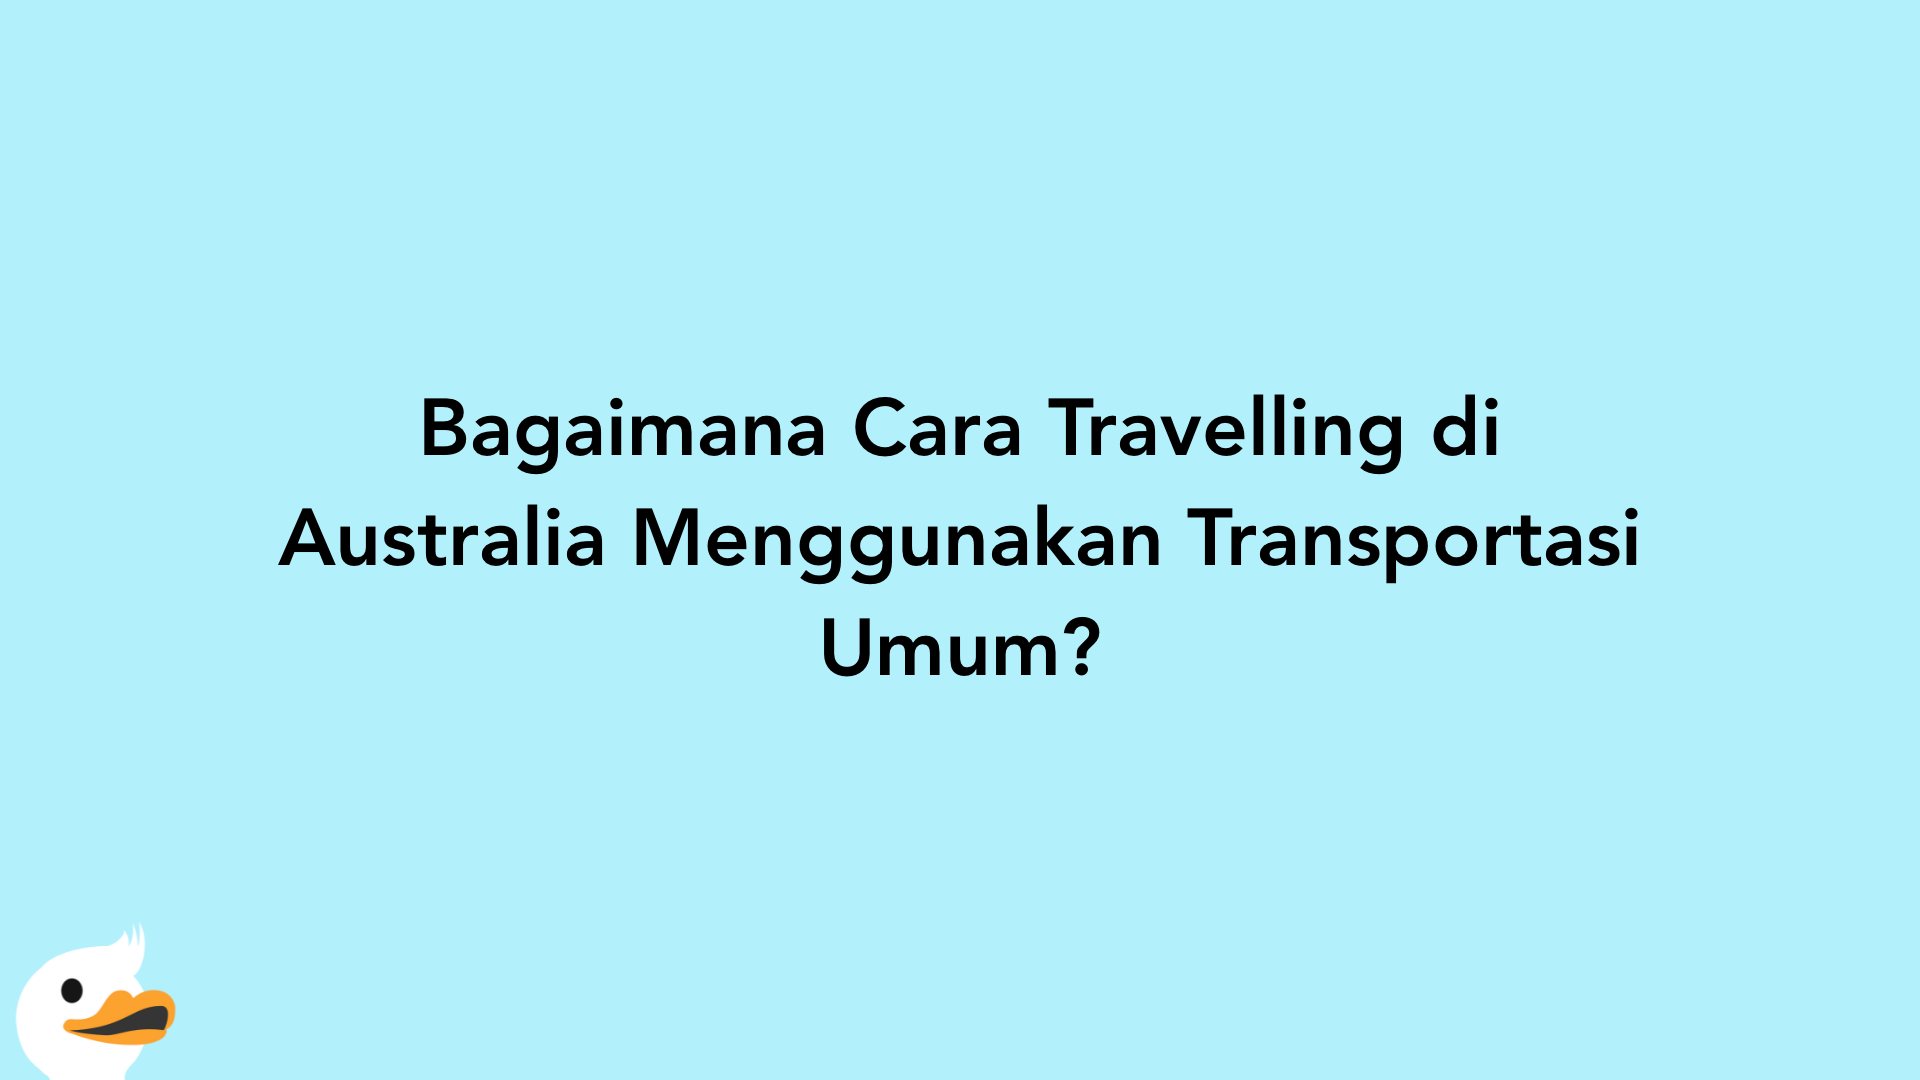 Bagaimana Cara Travelling di Australia Menggunakan Transportasi Umum?